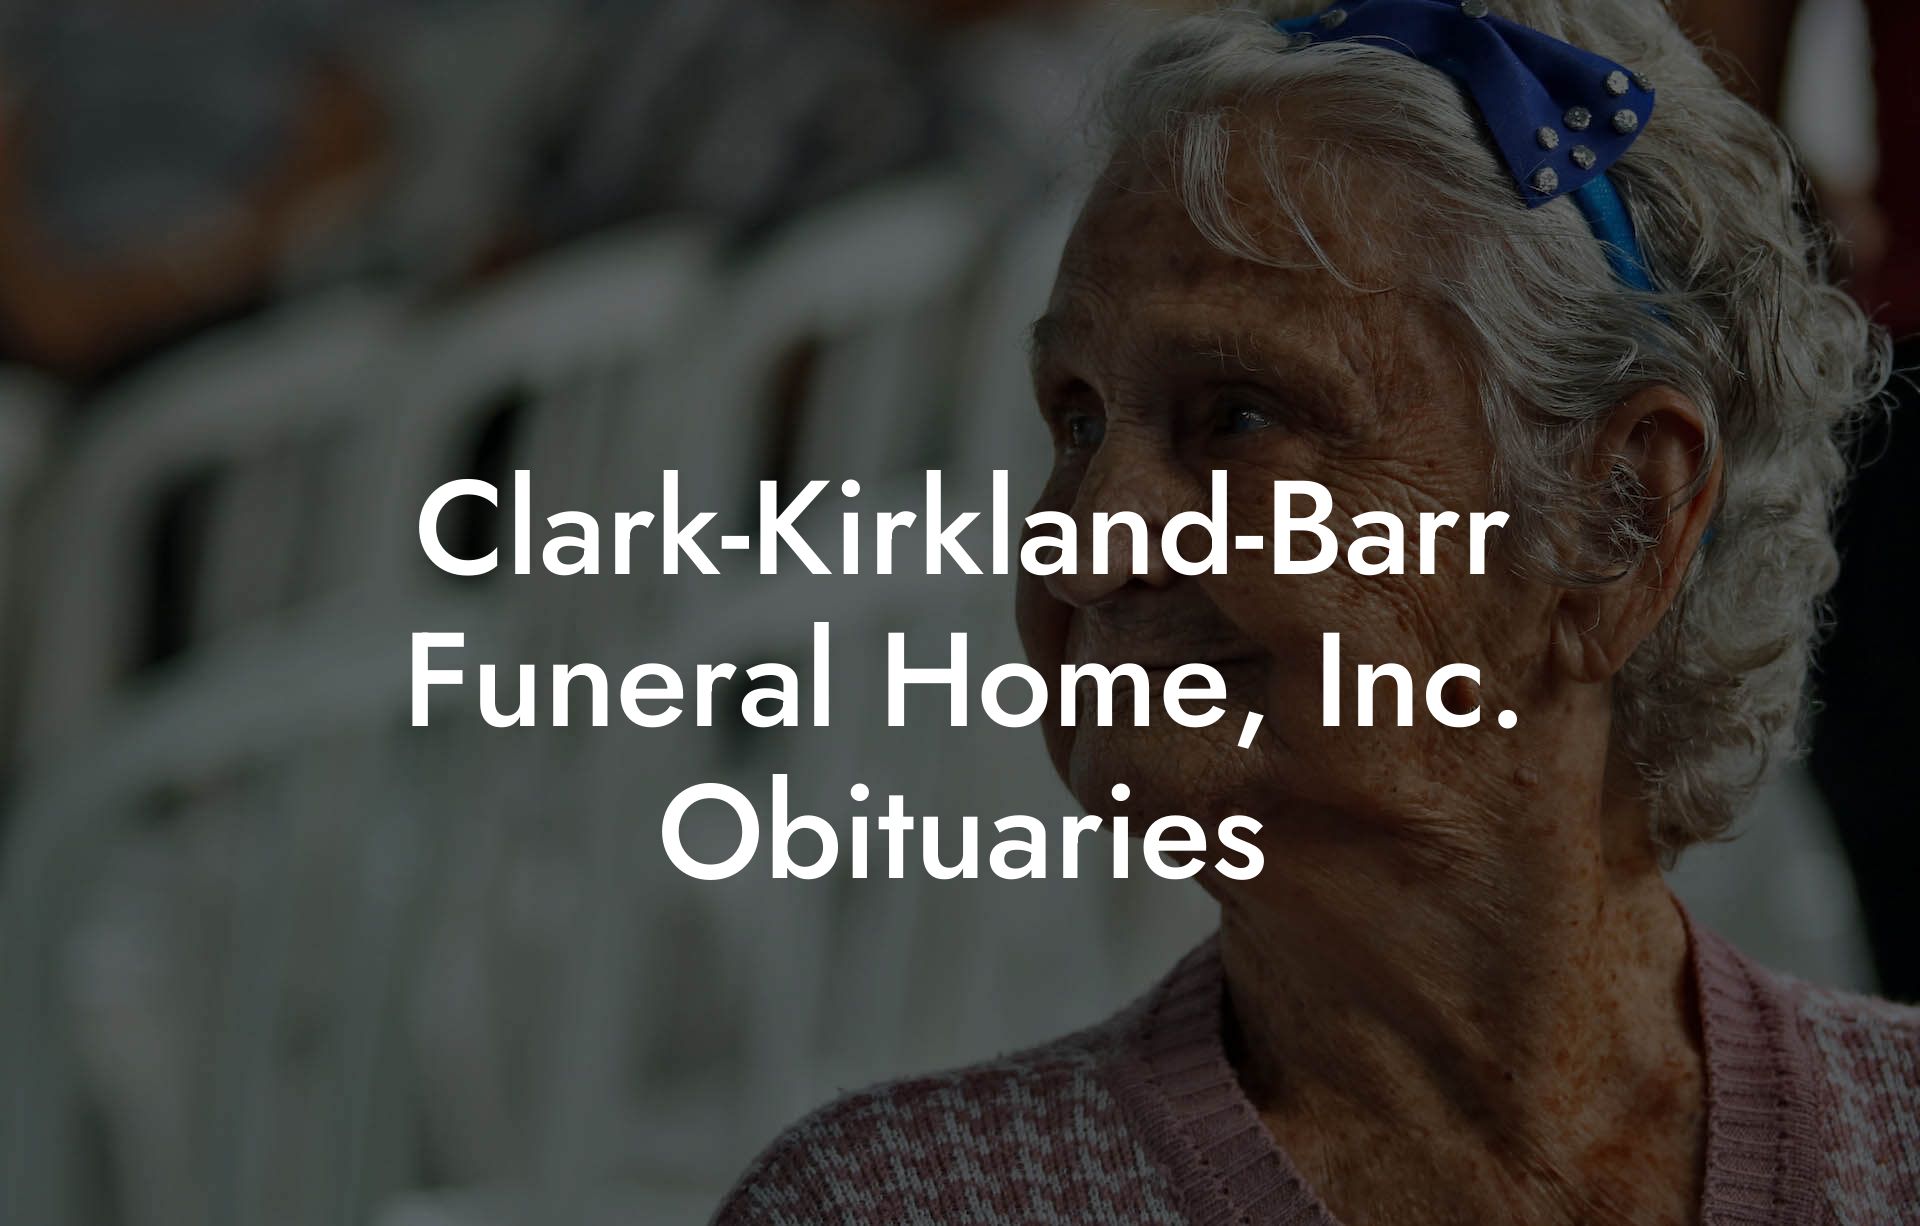 Clark-Kirkland-Barr Funeral Home, Inc. Obituaries